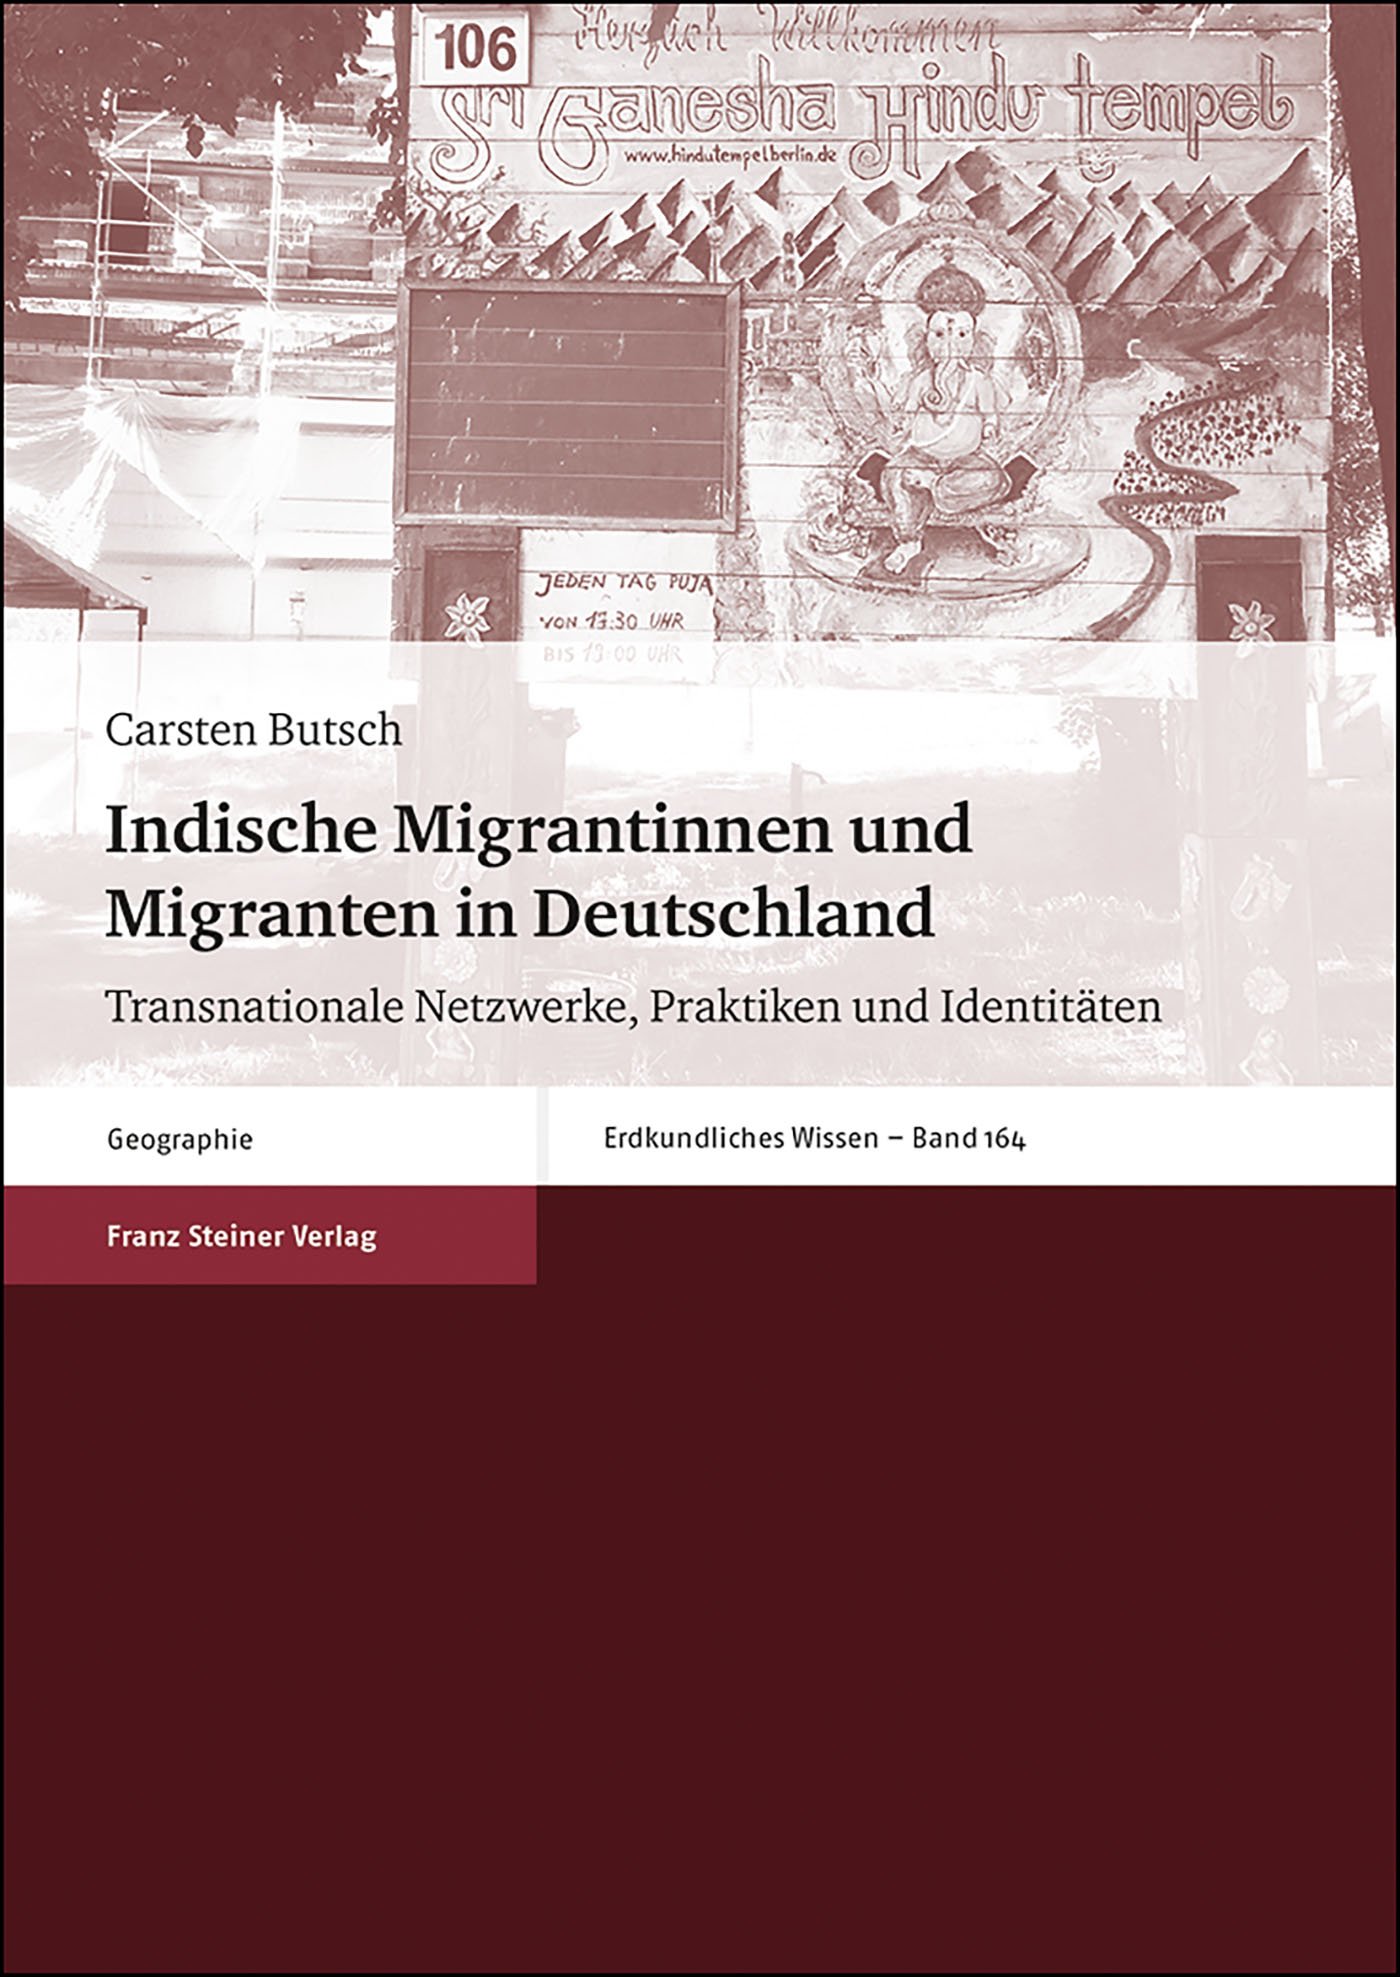 Indische Migrantinnen und Migranten in Deutschland

